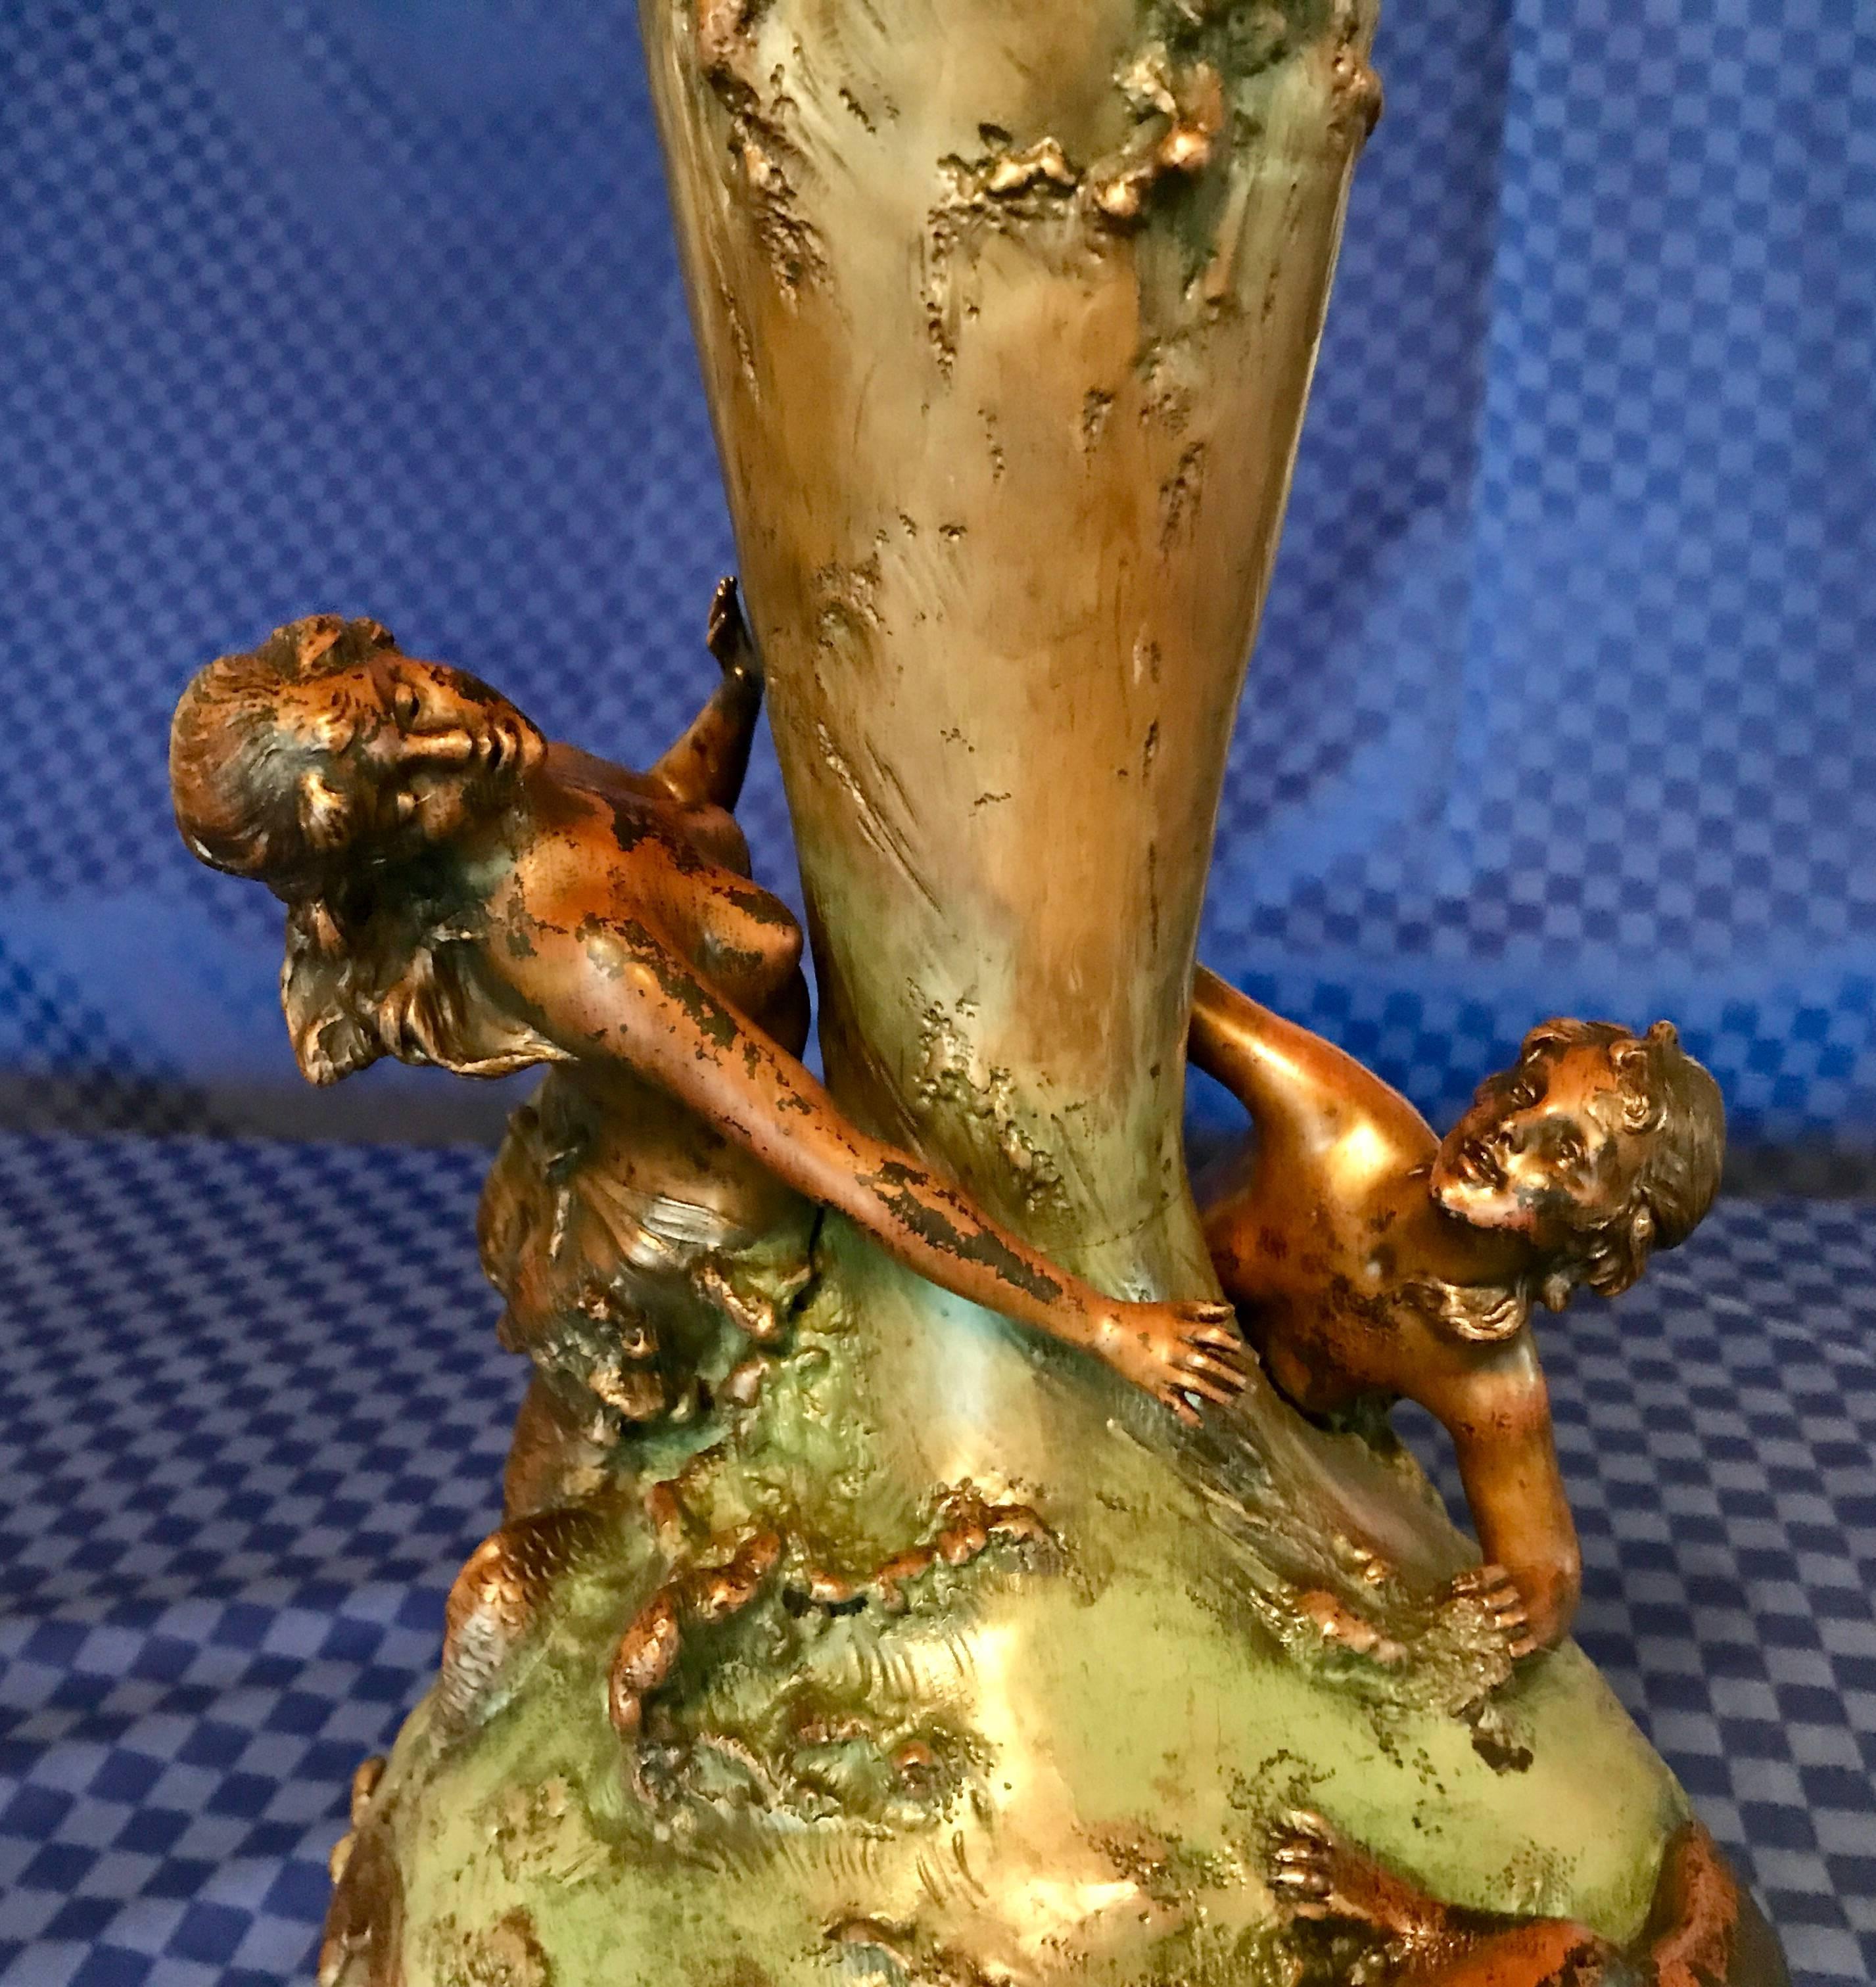 Eindrucksvolle Bronzevase mit dreidimensionalem Meerjungfrauendekor, signiert von Ignaz Mansch (Österreich 1867-1925). Die Vase wird direkt aus Deutschland verschickt. Die Versandkosten nach Boston sind inbegriffen.